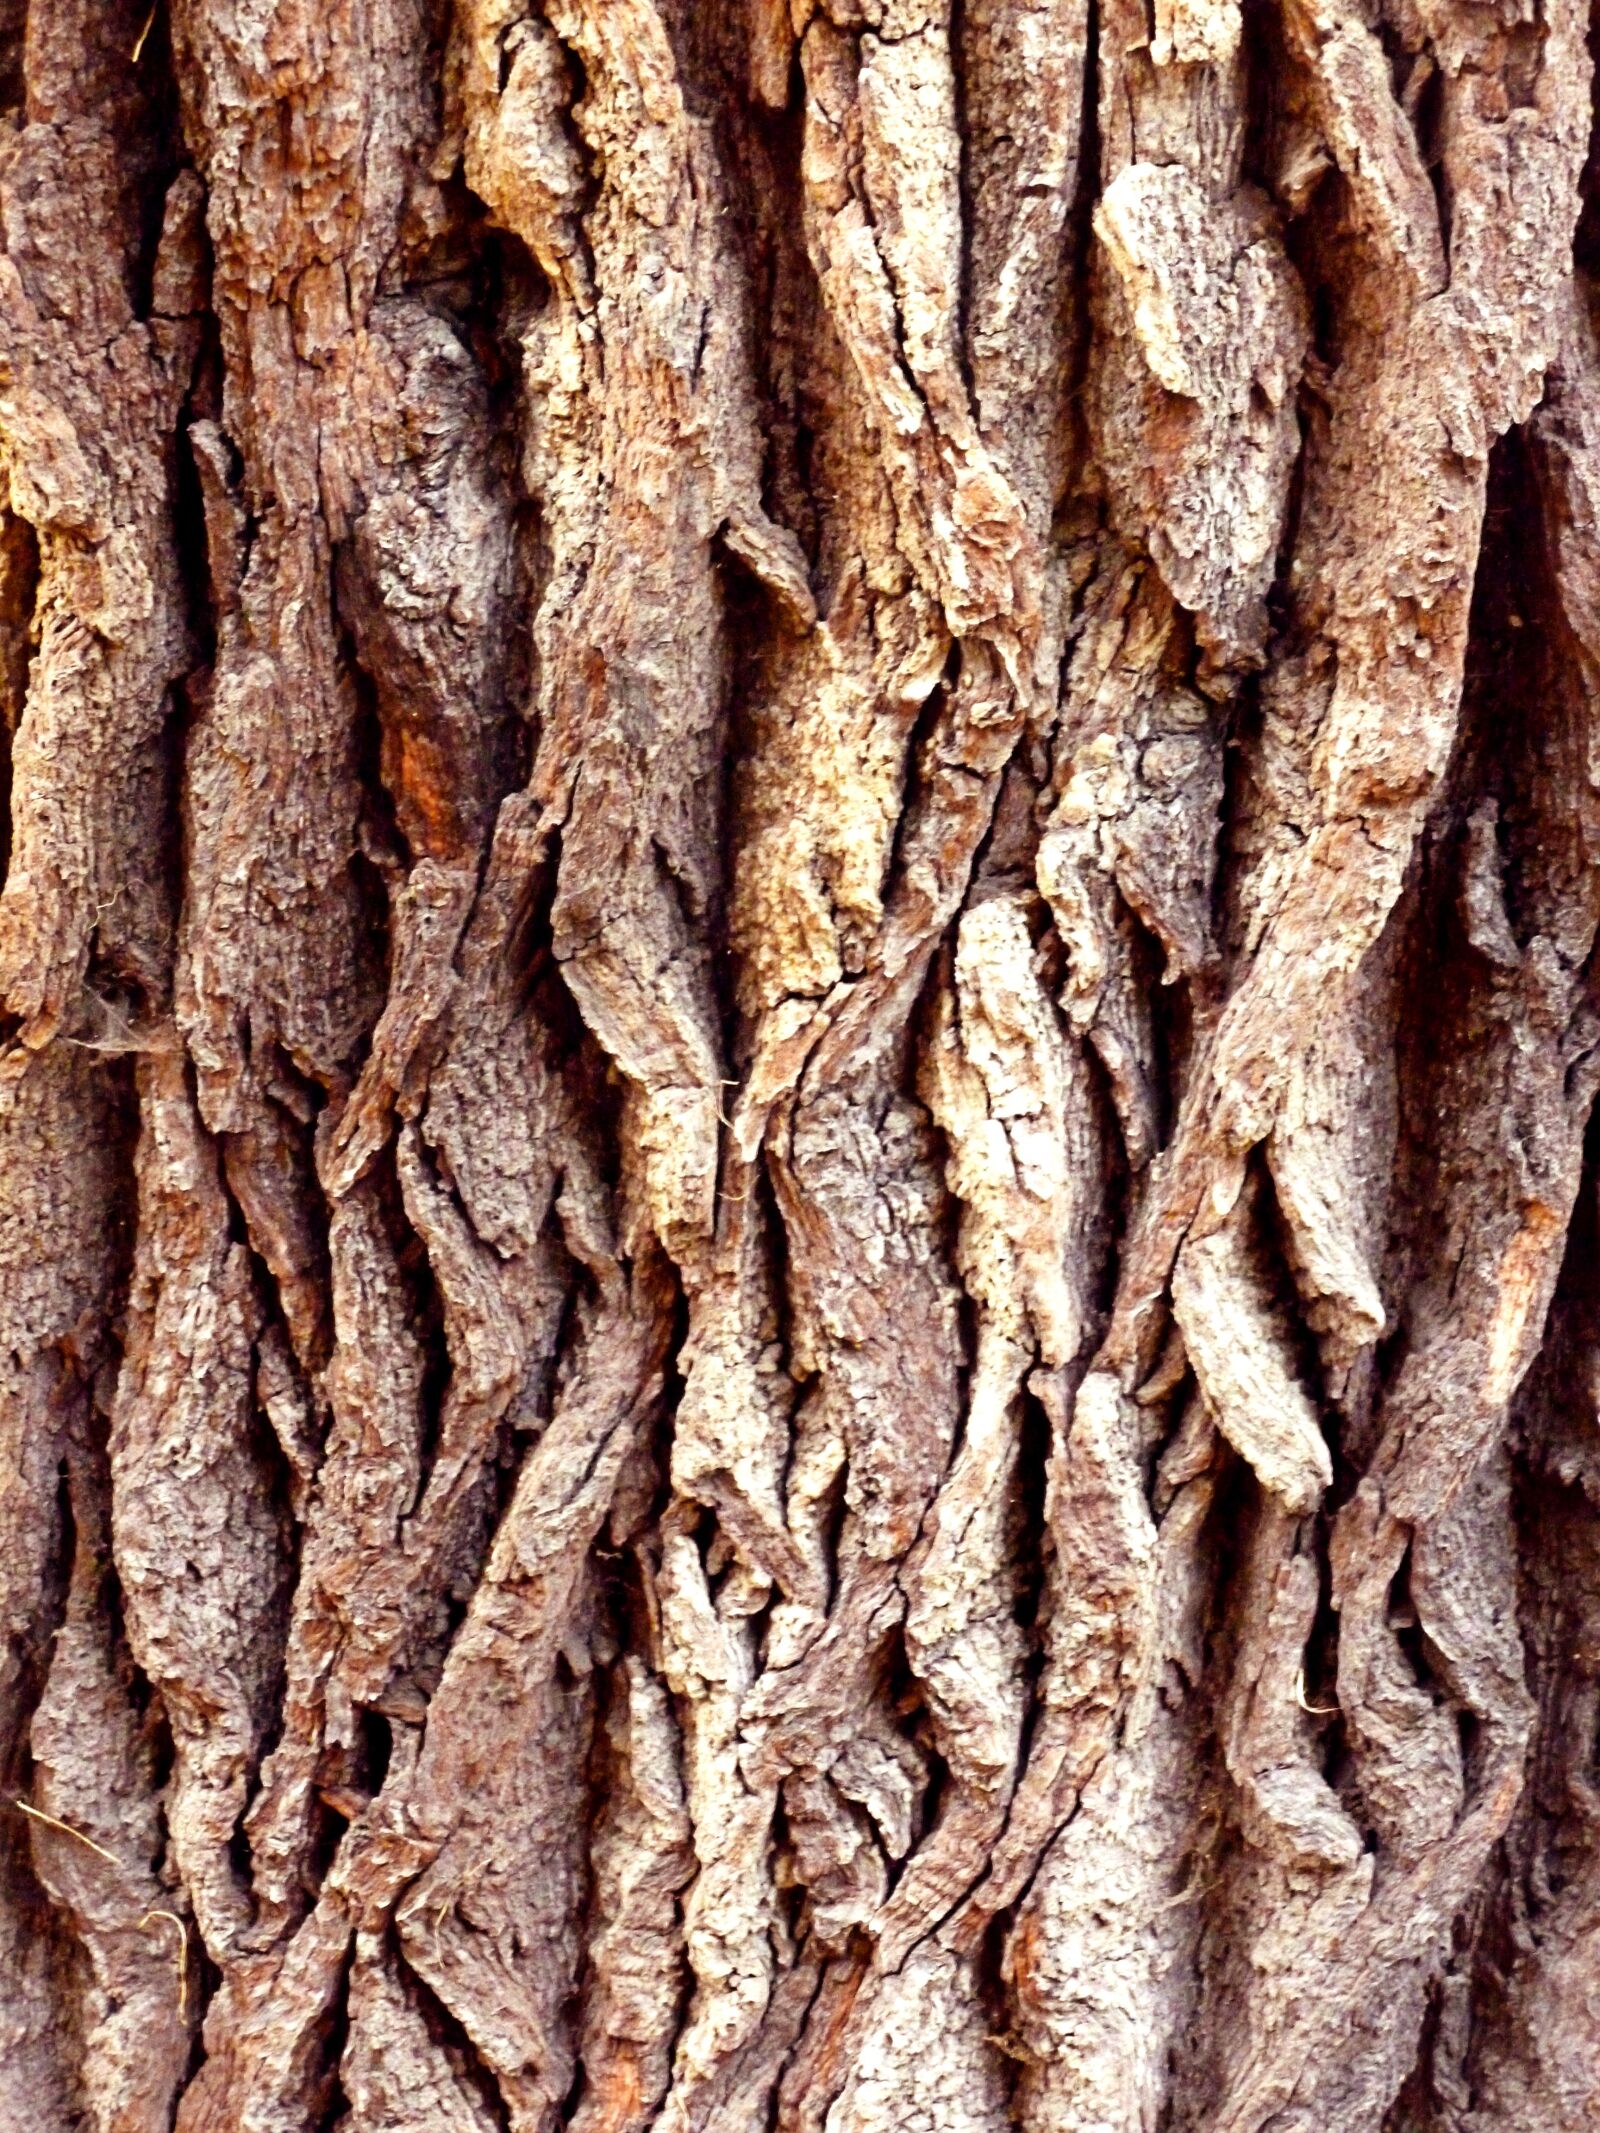 Panasonic DMC-FS37 sample photo. Tree bark, tree, nature photography